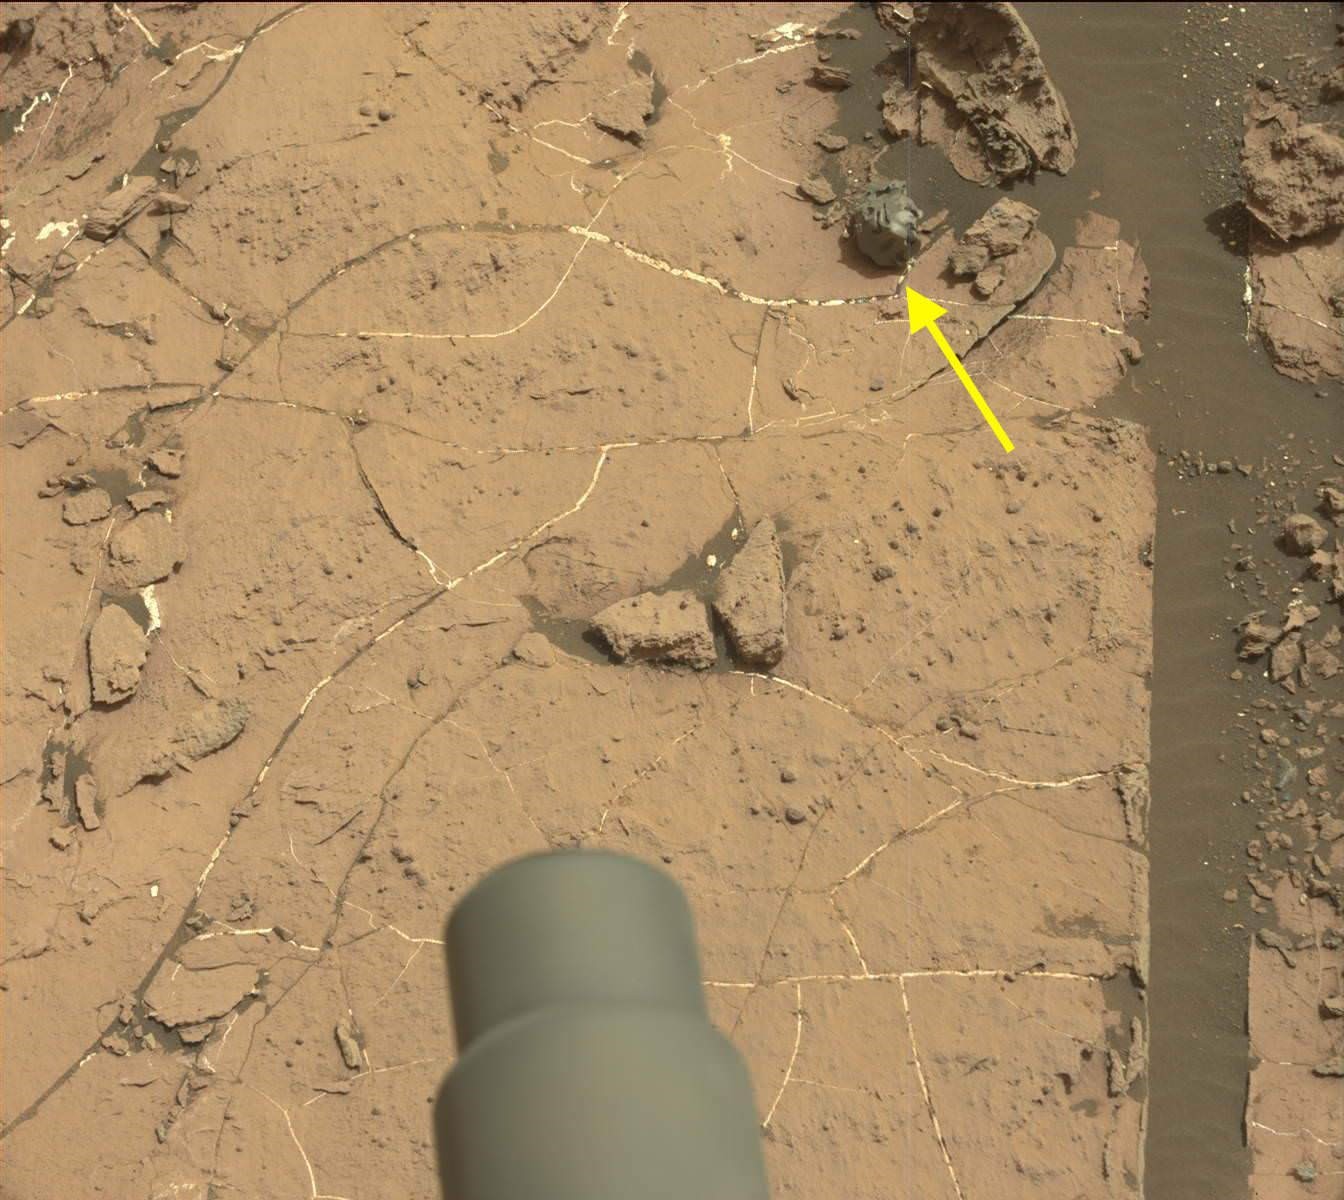 Une étrange météorite métallique repérée par l’astromobile Curiosity sur Mars